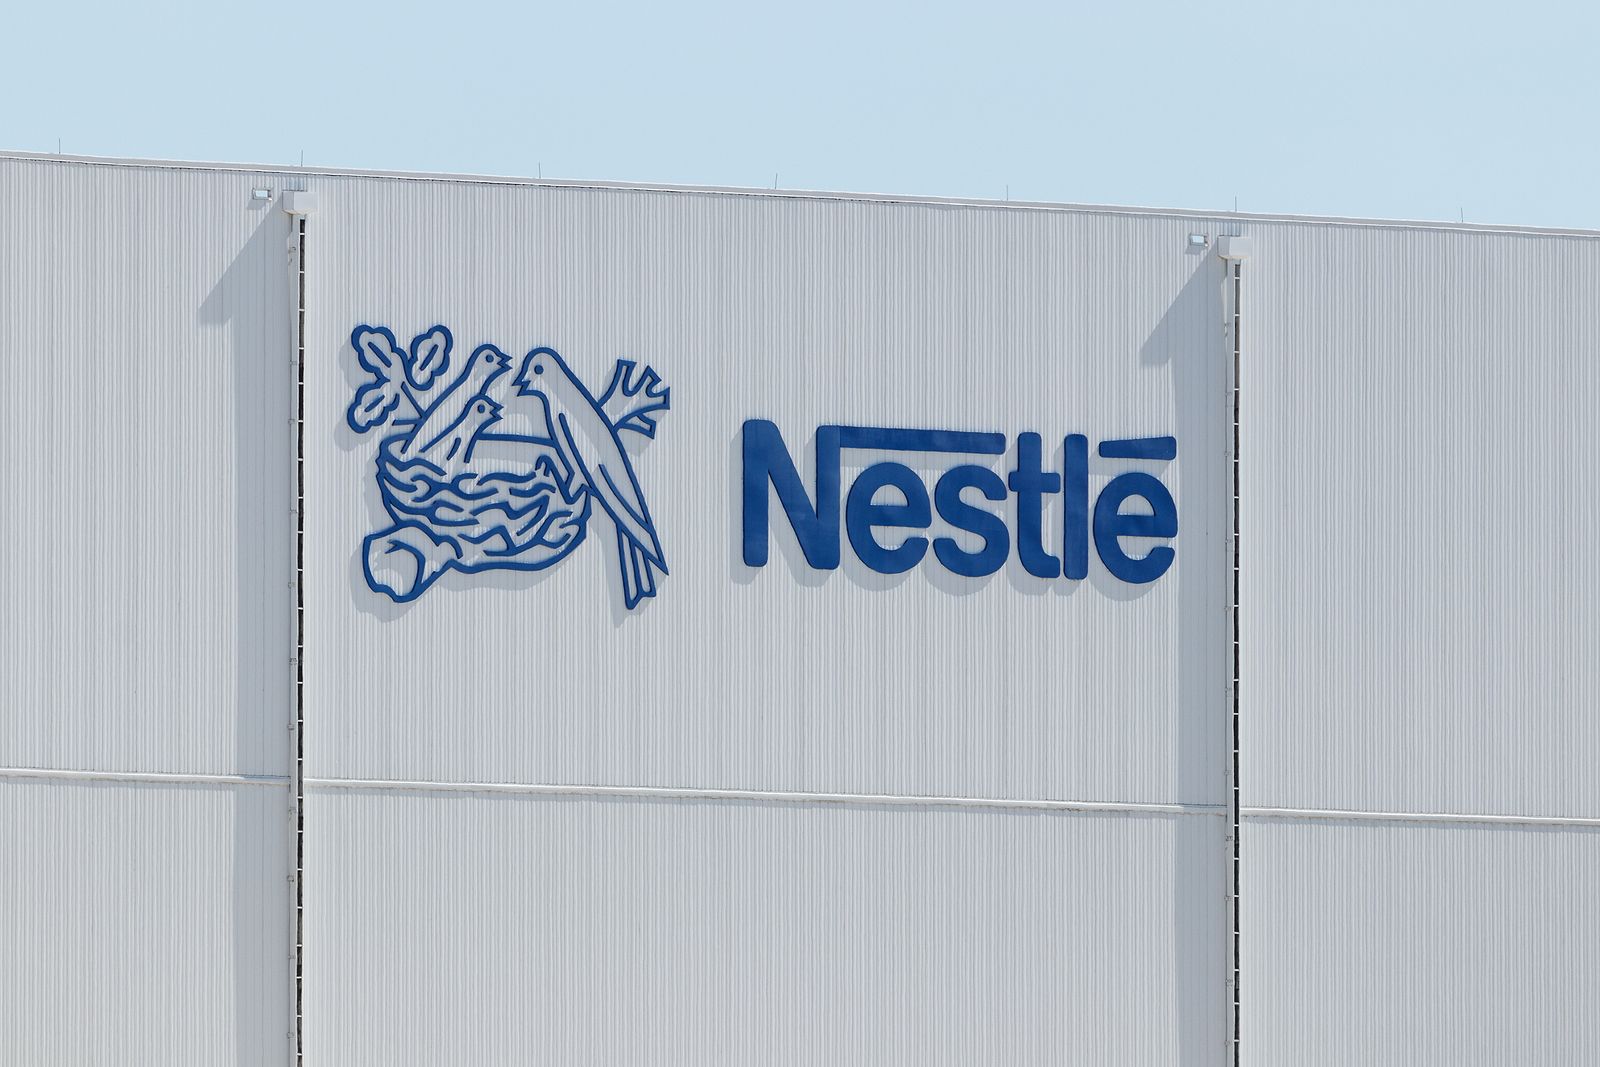 Nestlé, en el foco: sus accionistas reclaman que reduzca los productos poco saludables